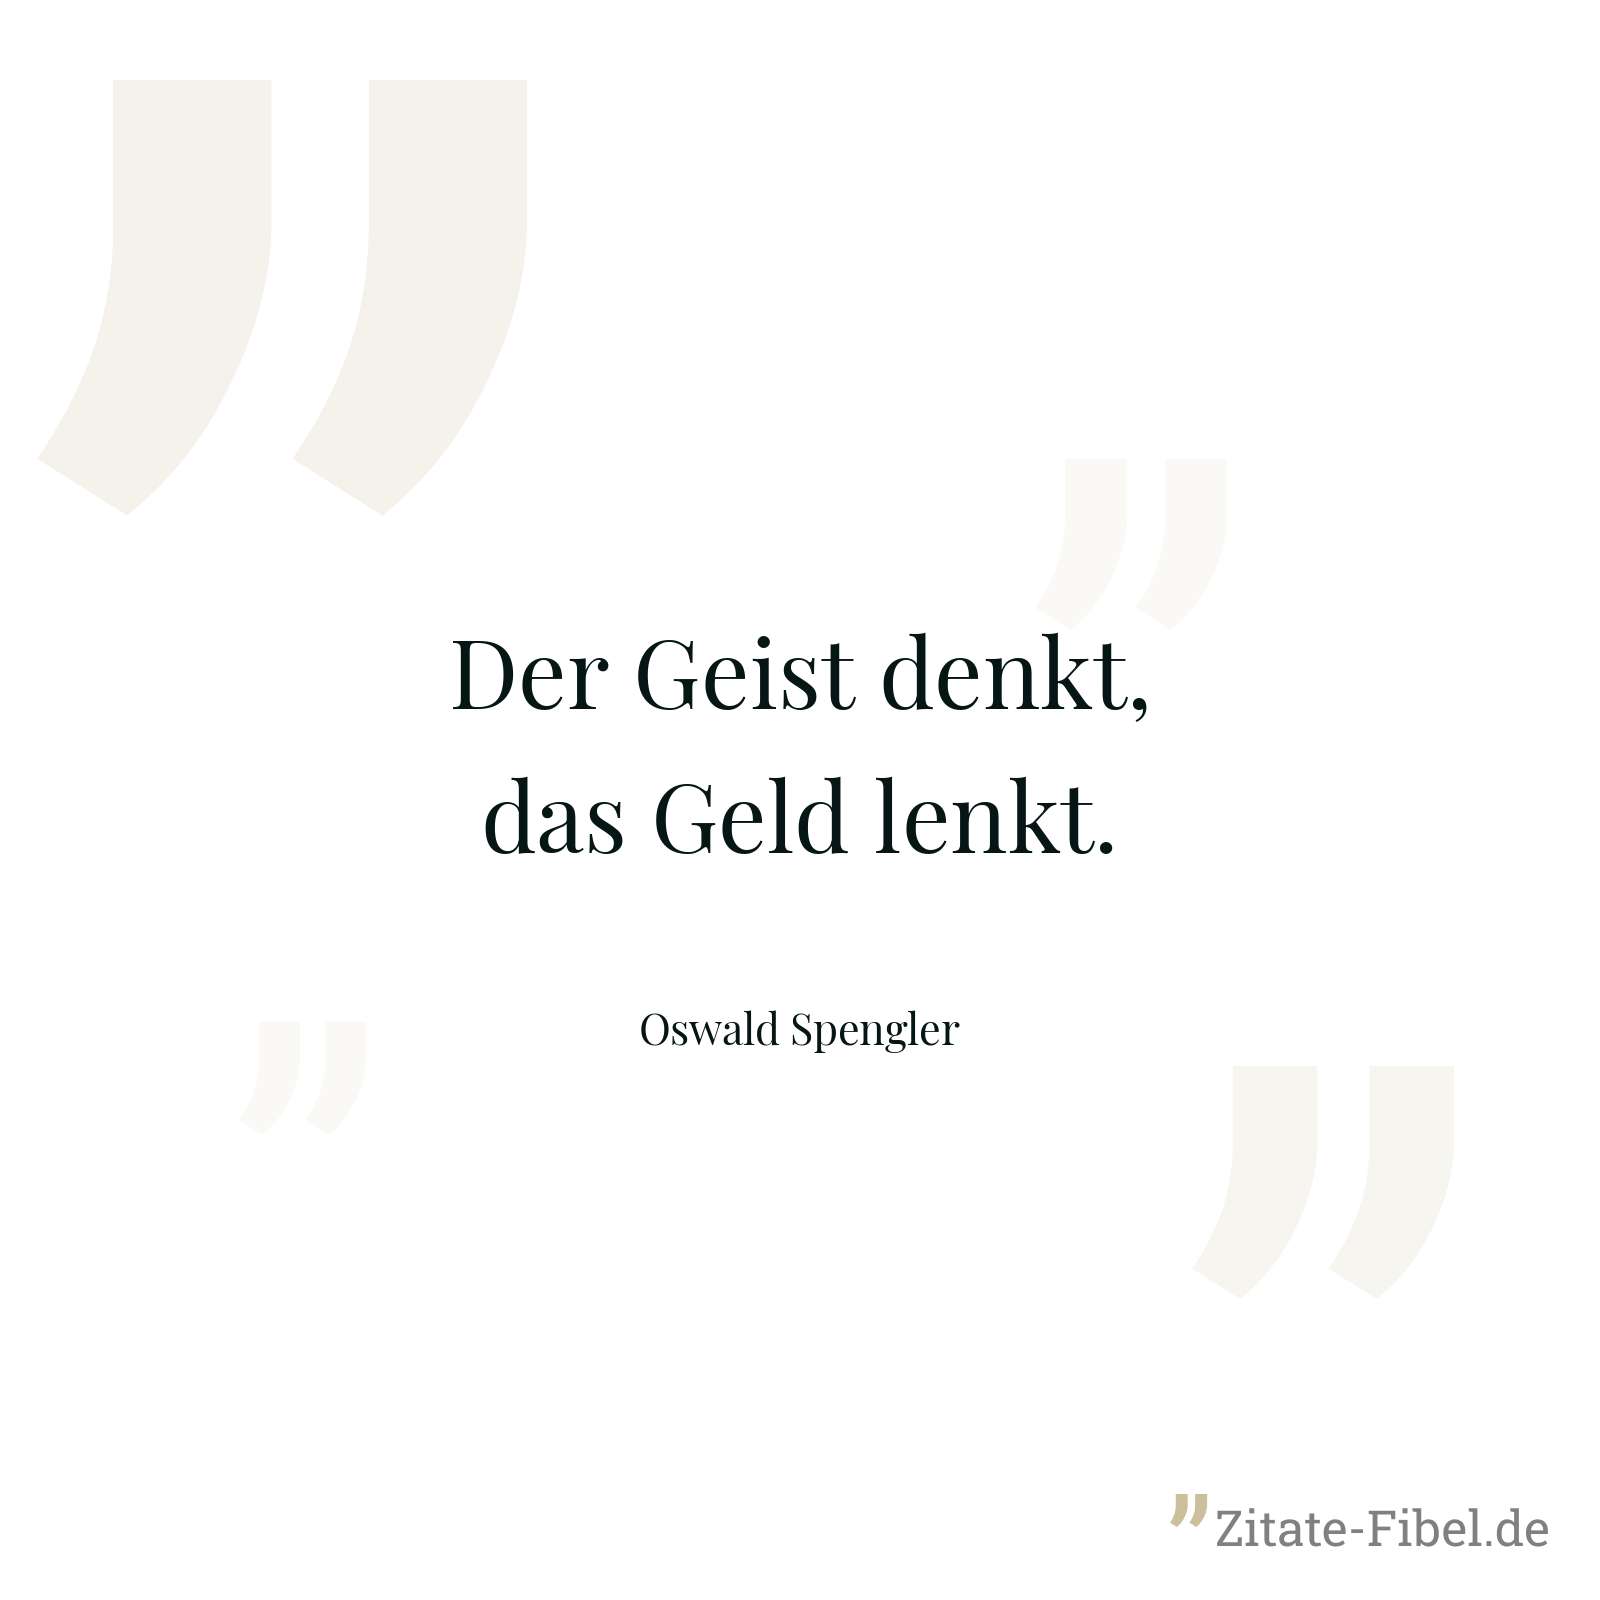 Der Geist denkt, das Geld lenkt. - Oswald Spengler